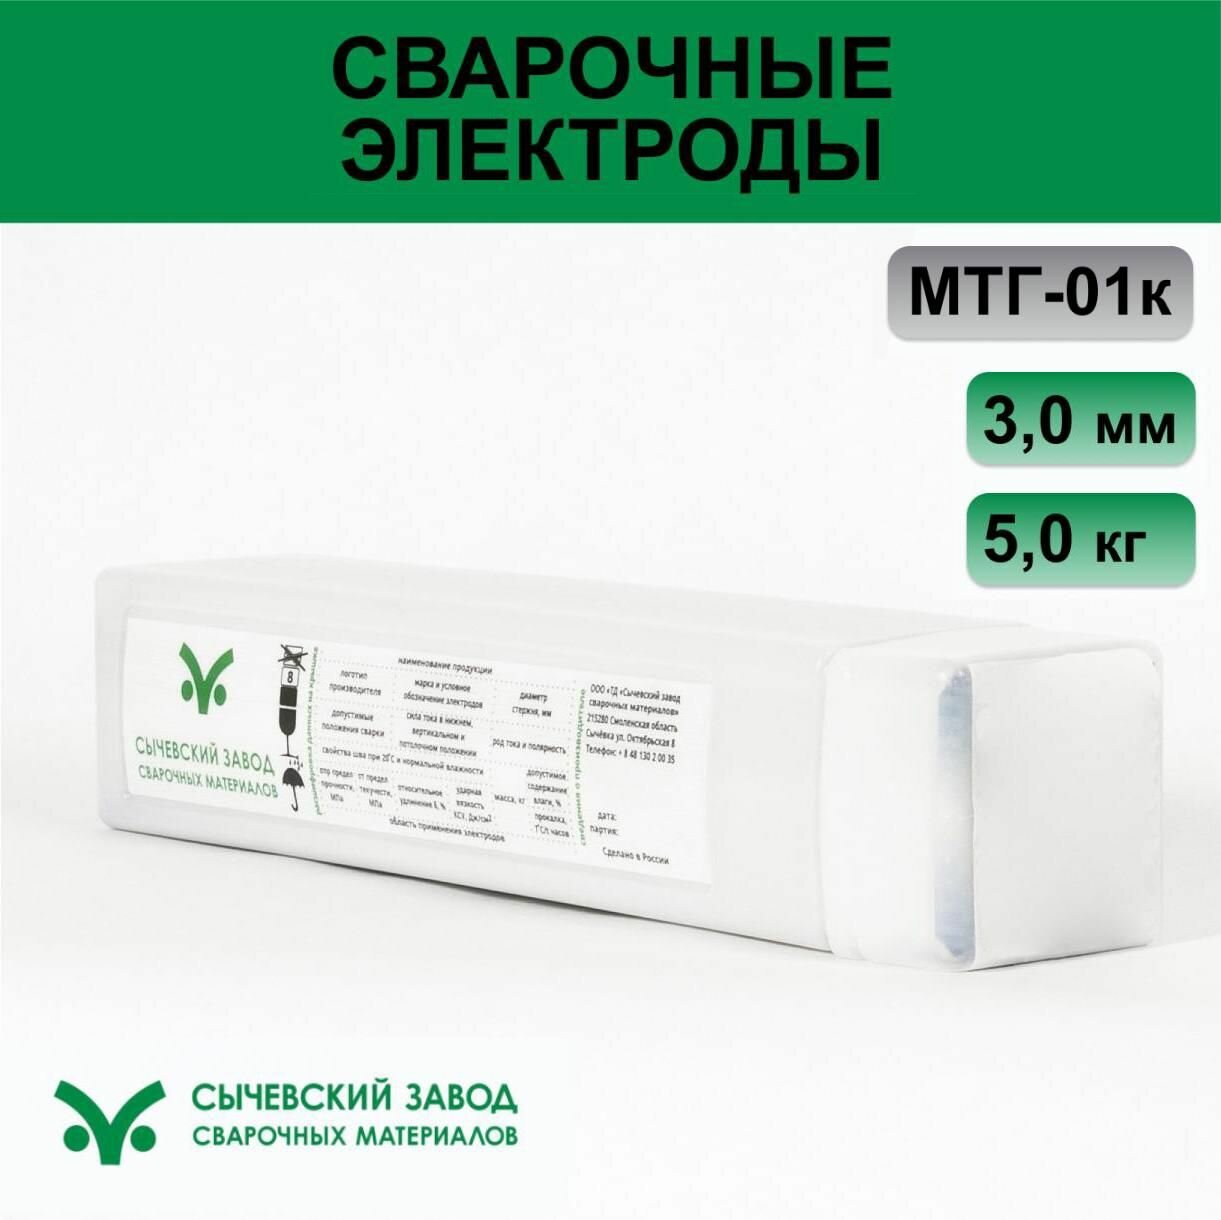 Сычевский завод сварочных материалов Электроды МТГ-01К ? 3,0 мм (5 кг) 402